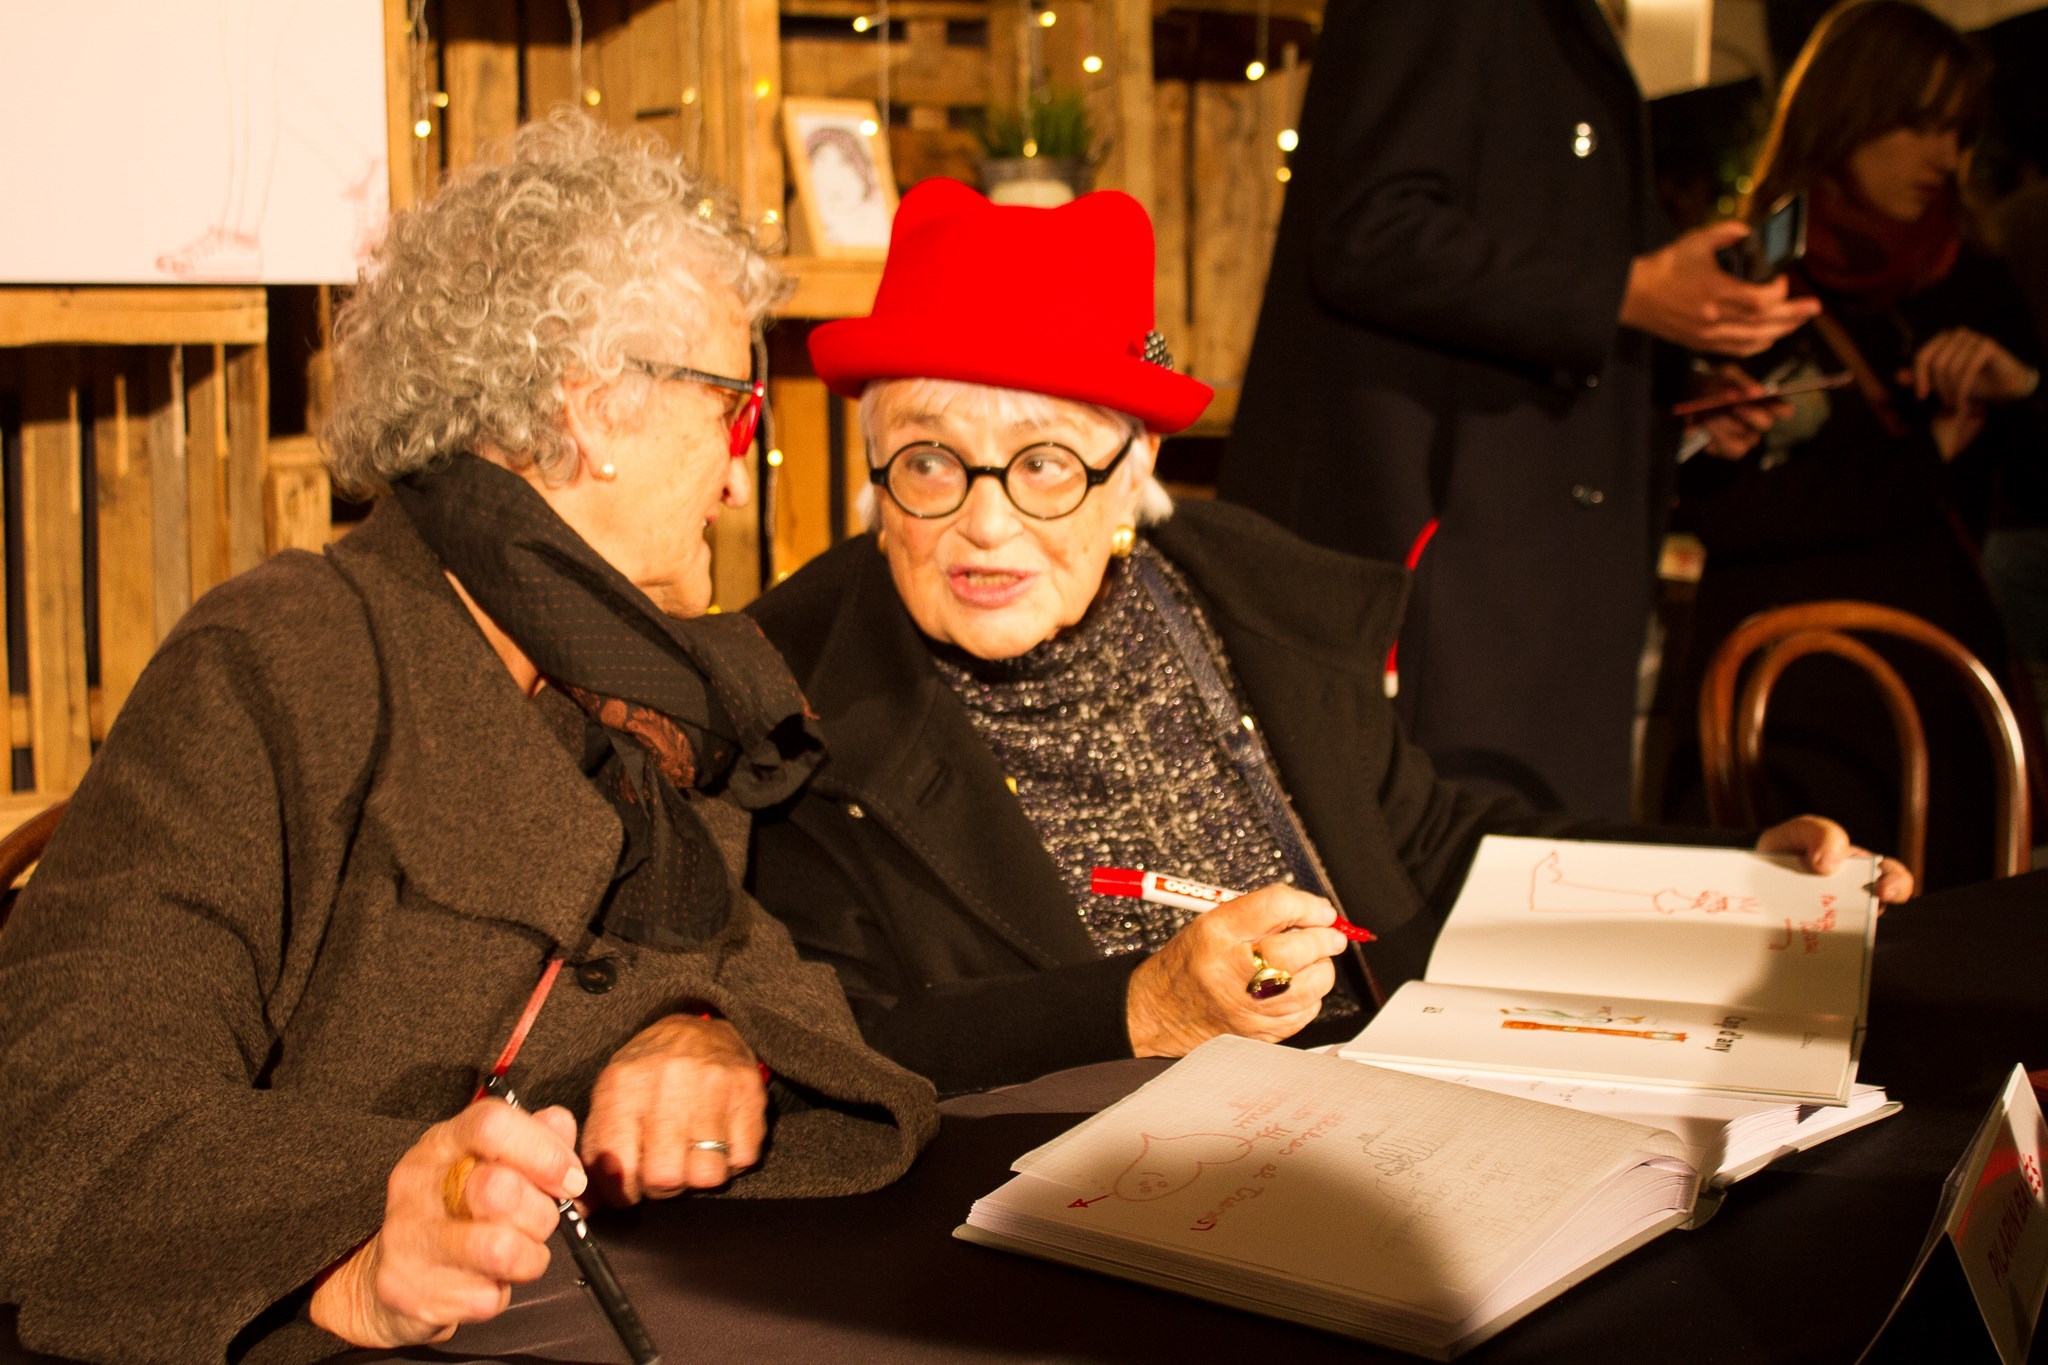  Roser Capdevila i Pilarín Bayés signant llibres